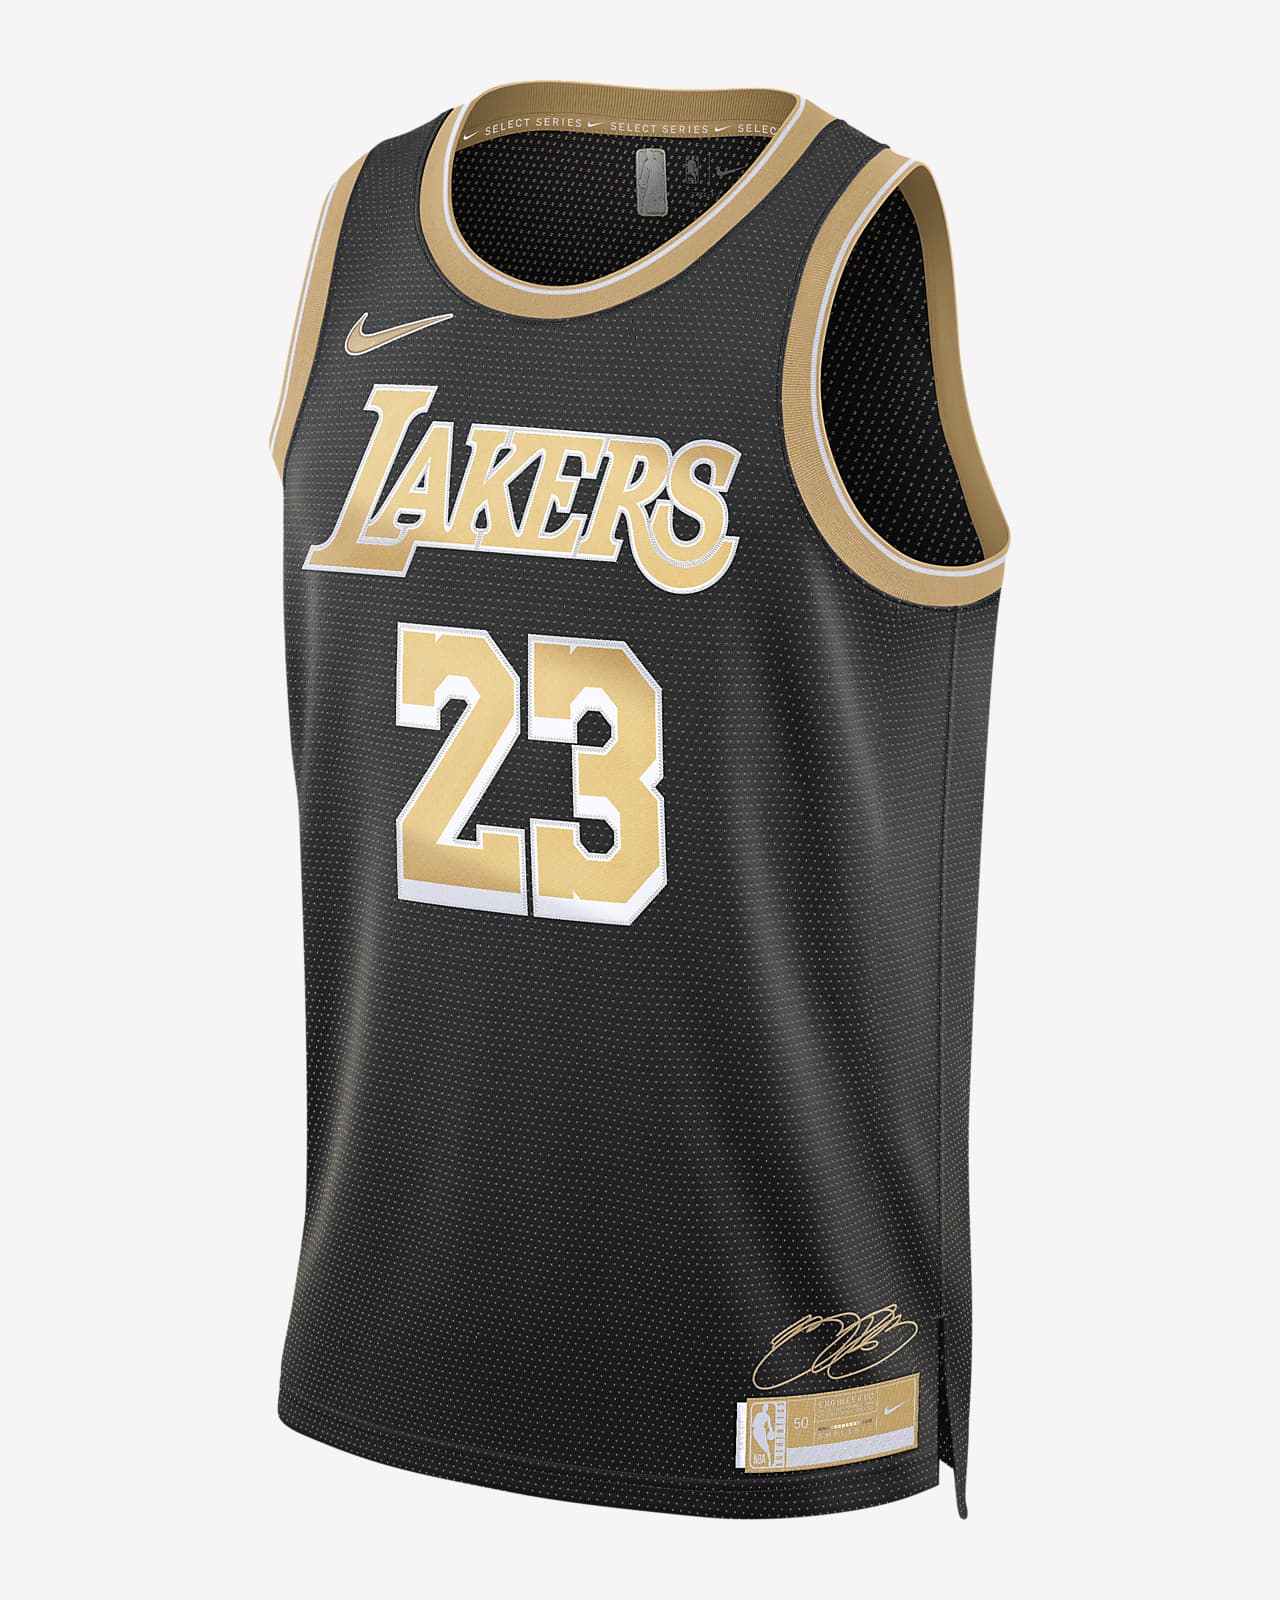 2024 赛季洛杉矶湖人队 (LeBron James) Select Series Nike Dri-FIT NBA Jersey 男子速干球衣